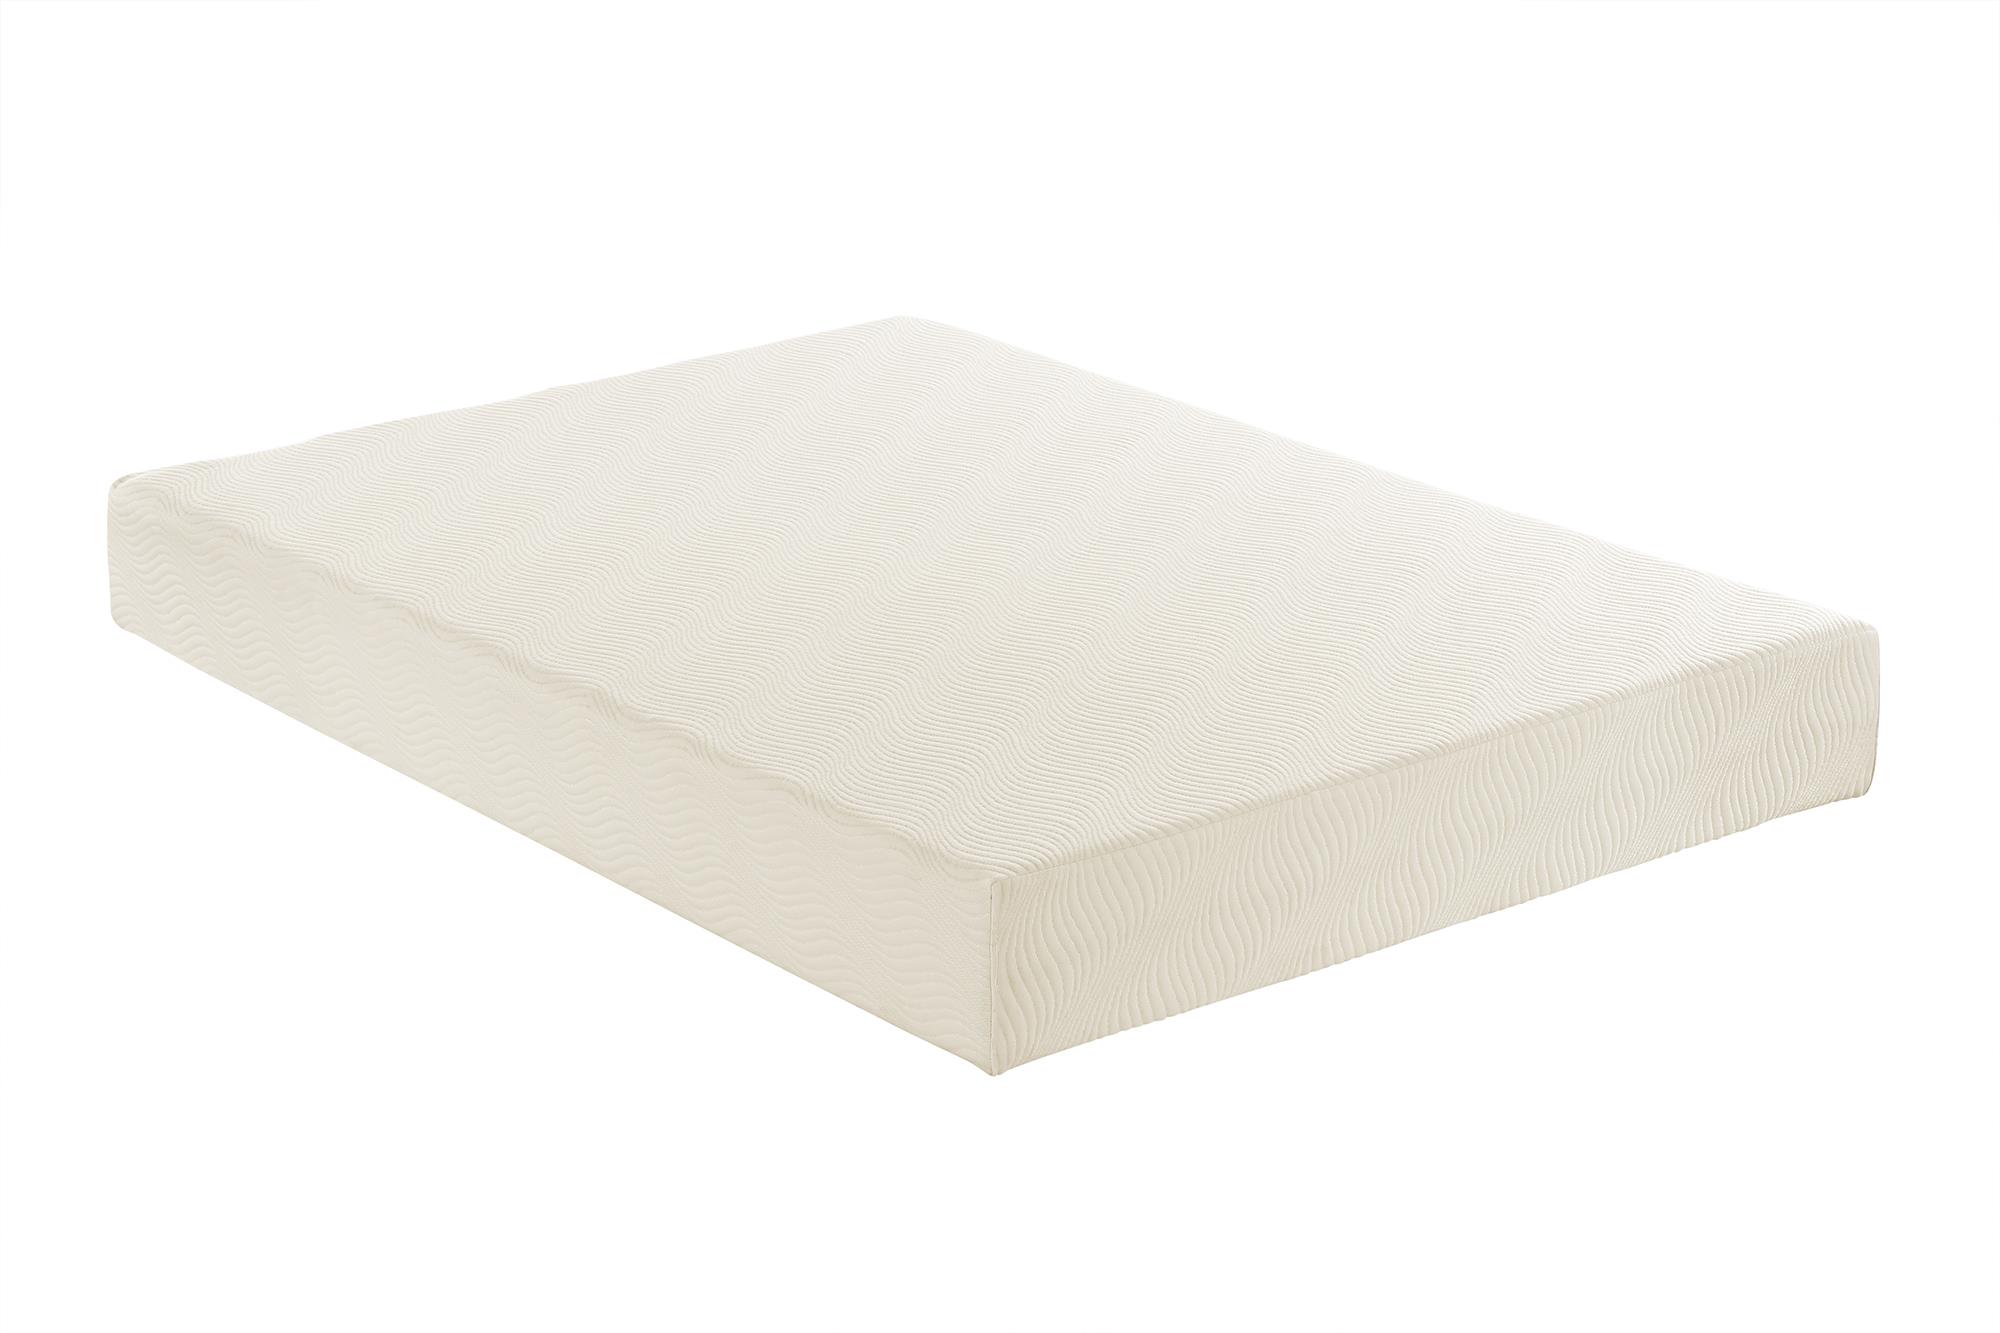 8-inch memory foam mattress walmart